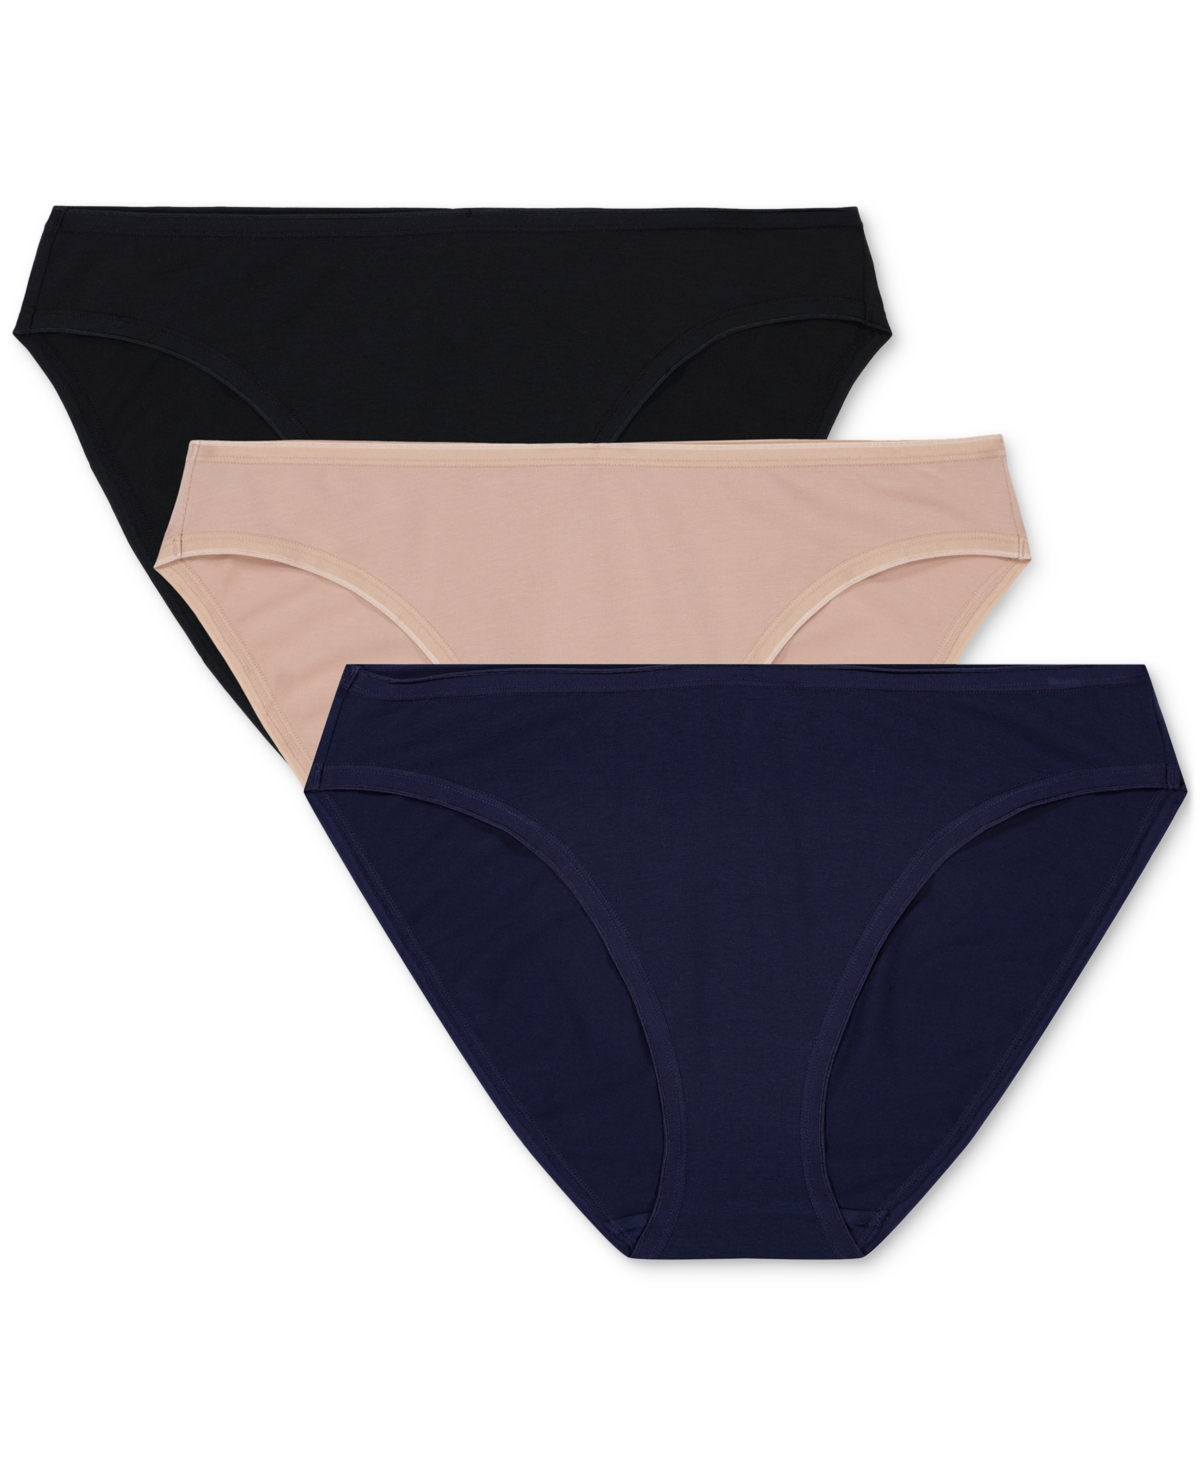 Gap Body Women's 3-pk Bikini Underwear Gpw00274 In Neutral Pink,true Blue,true Black